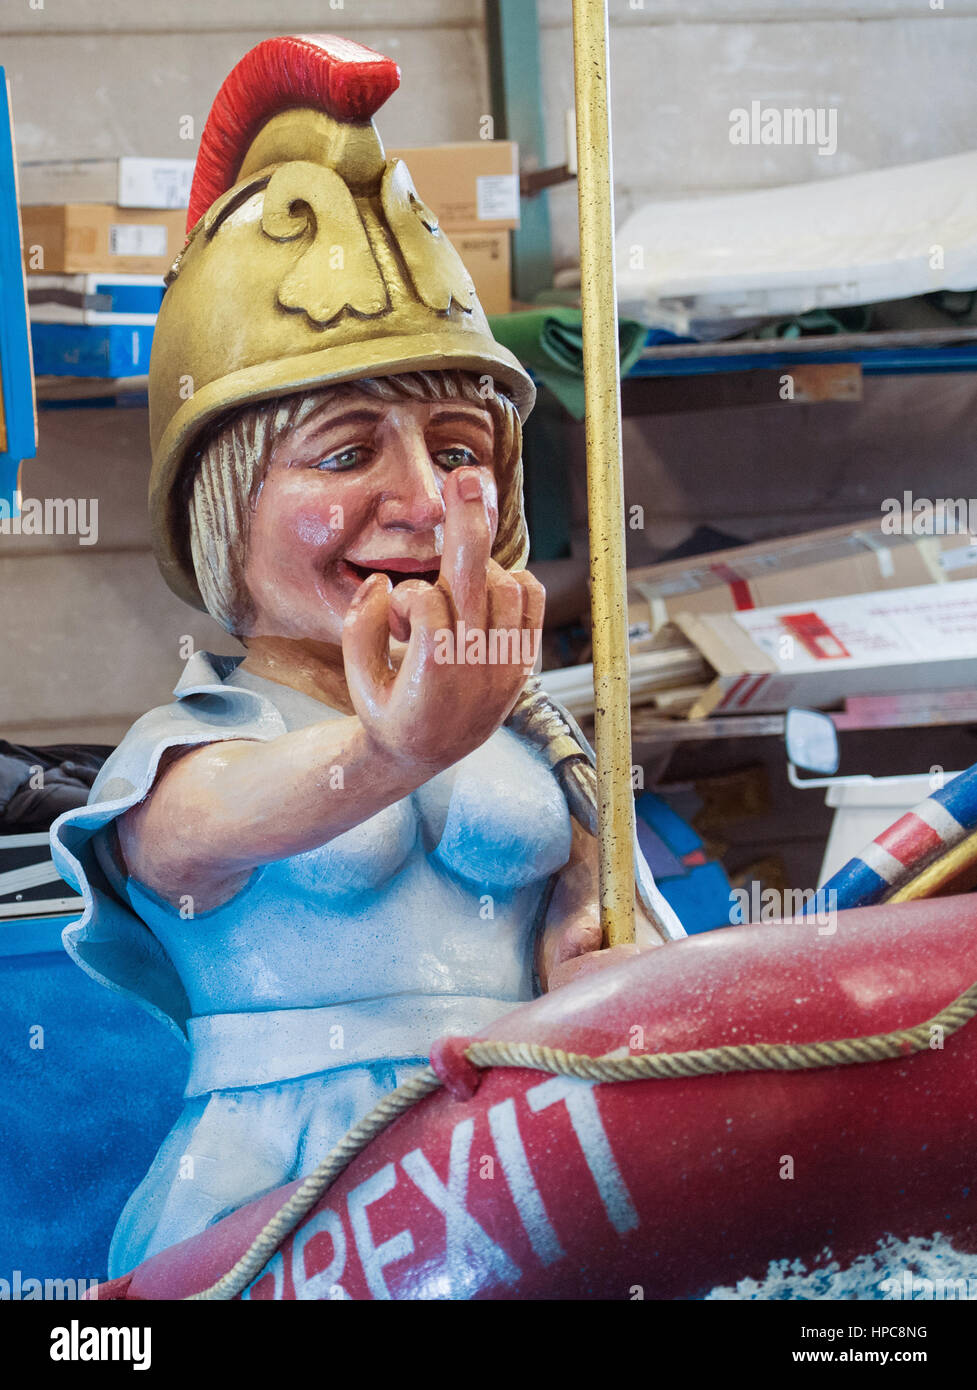 Mainz, Allemagne. Feb 21, 2017. La 'Règle, Britannia' carnival float représentant le premier ministre britannique Theresa mai dans un esquif gonflable avec le mot 'Brexit' imprimé sur le côté comme vu à Mainz, Allemagne, 21 février 2017. L'Association du carnaval de Mayence (MCV) a présenté le flotteur en vue de la prochaine présentation lundi de carnaval. Photo : Andreas Arnold/dpa/Alamy Live News Banque D'Images